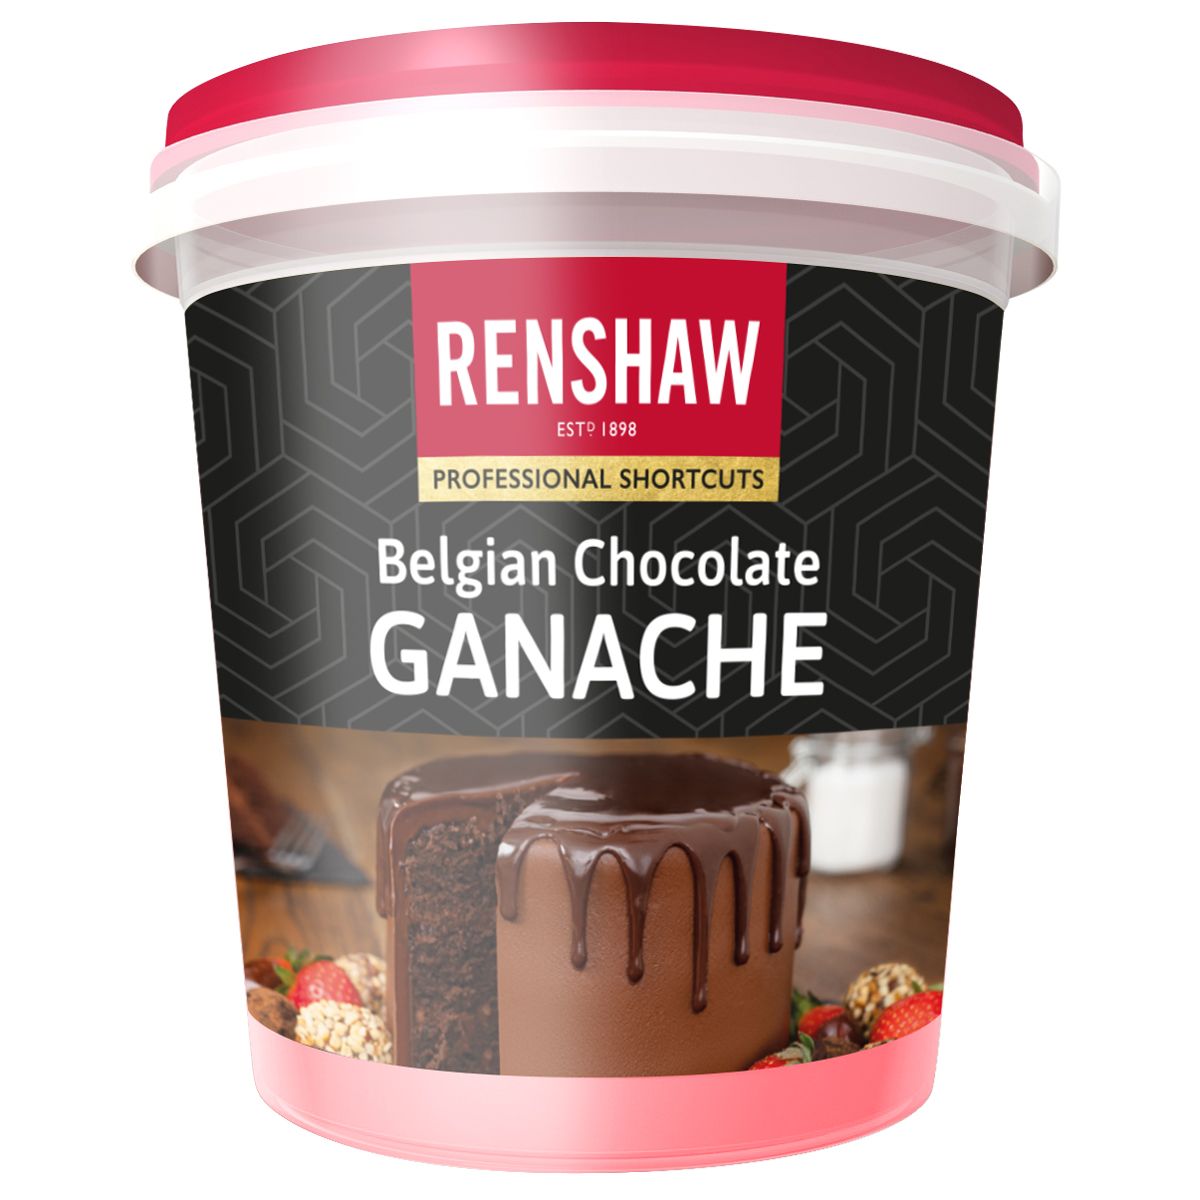 RENSHAW BELGIAN CHOCOLATE GANACHE 350G